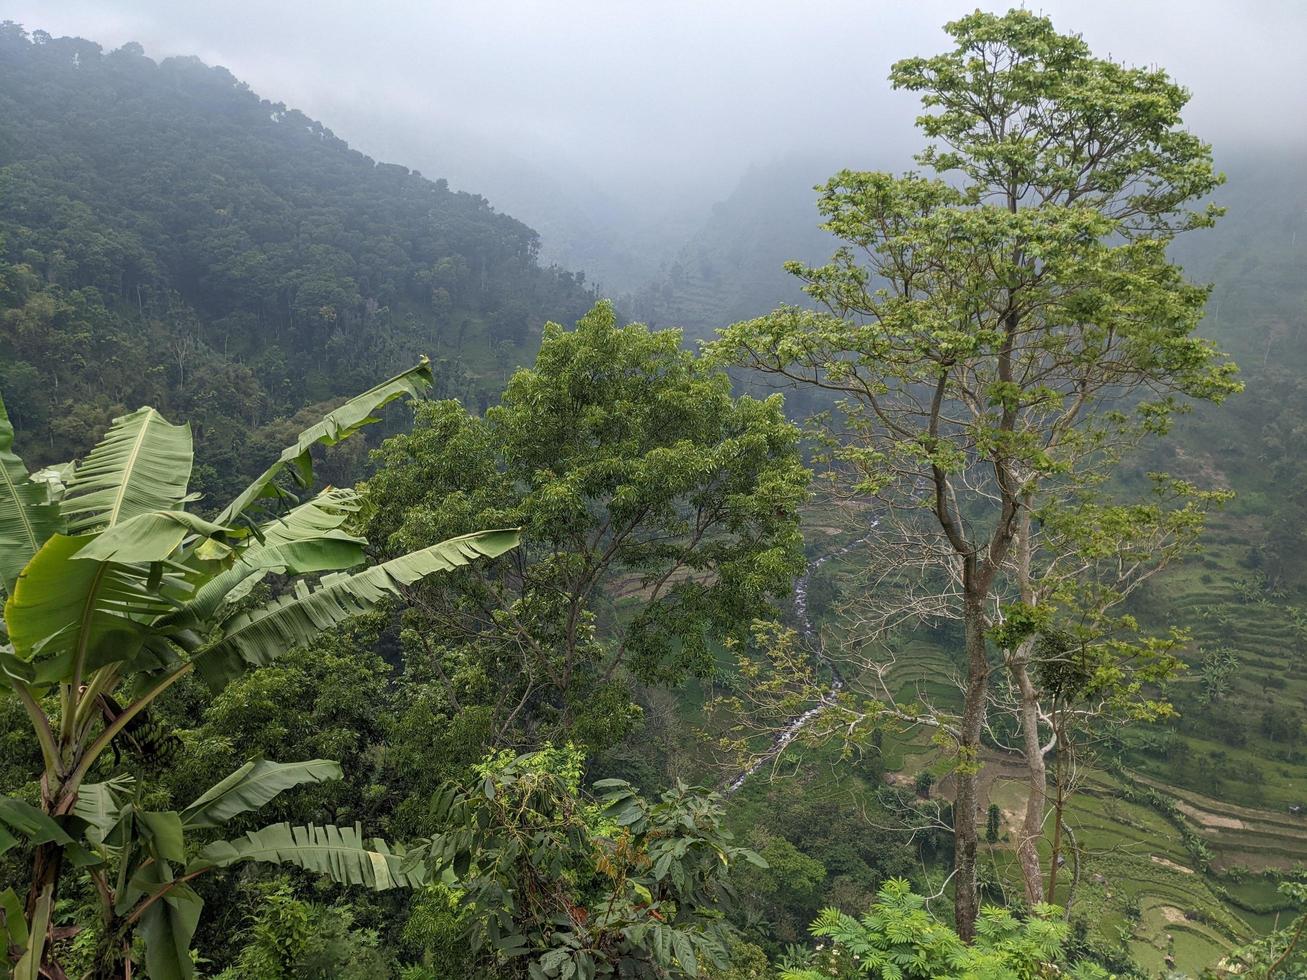 paisaje foto de montaña con empañamiento bosque y nublado cielo. el foto es adecuado a utilizar para clima cambios póster y naturaleza antecedentes.